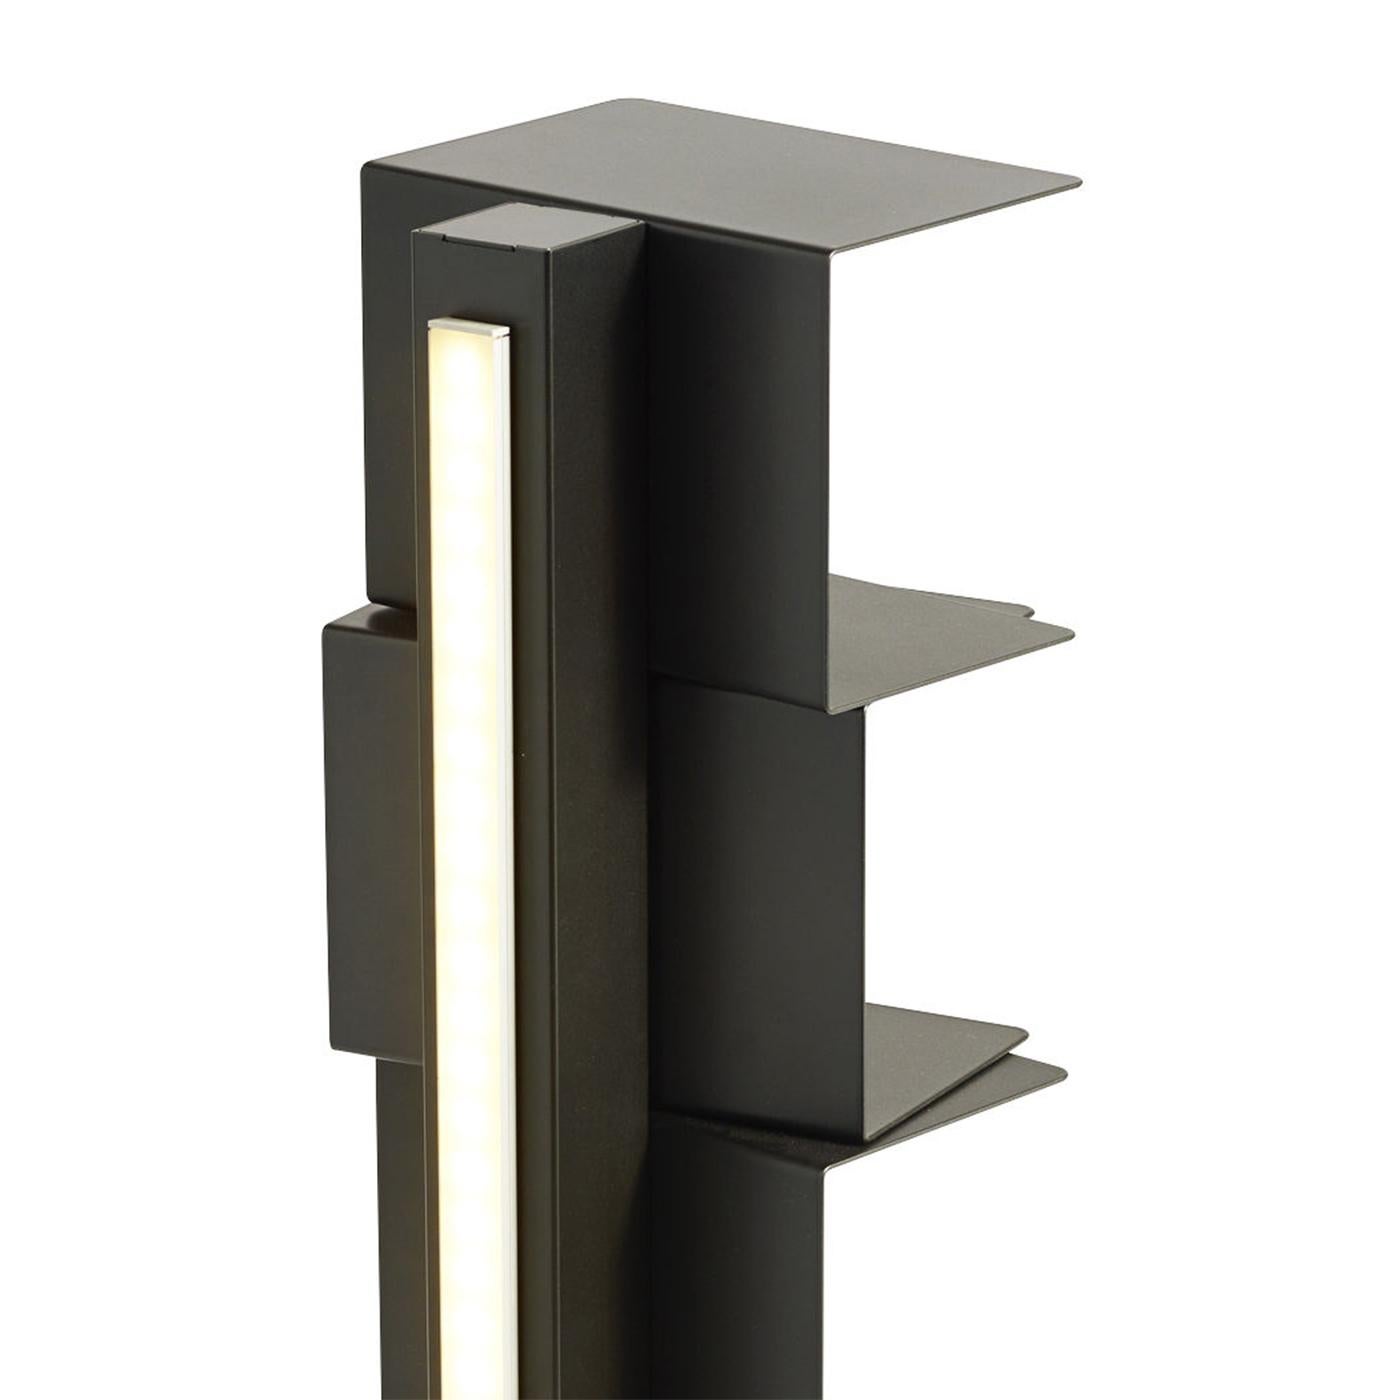 Bücherregal Lumina A mit ganzer Struktur aus Stahl in 
schwarzes, mattes Finish. Bücherregal mit LED-Licht, 220V
in 2700°K. Mit 2,5 Meter transparenter Verkabelung und 
stecker. Mit verstellbaren Füßen. Selbstmaß 12 x 13 cm.
Höhe zwischen den